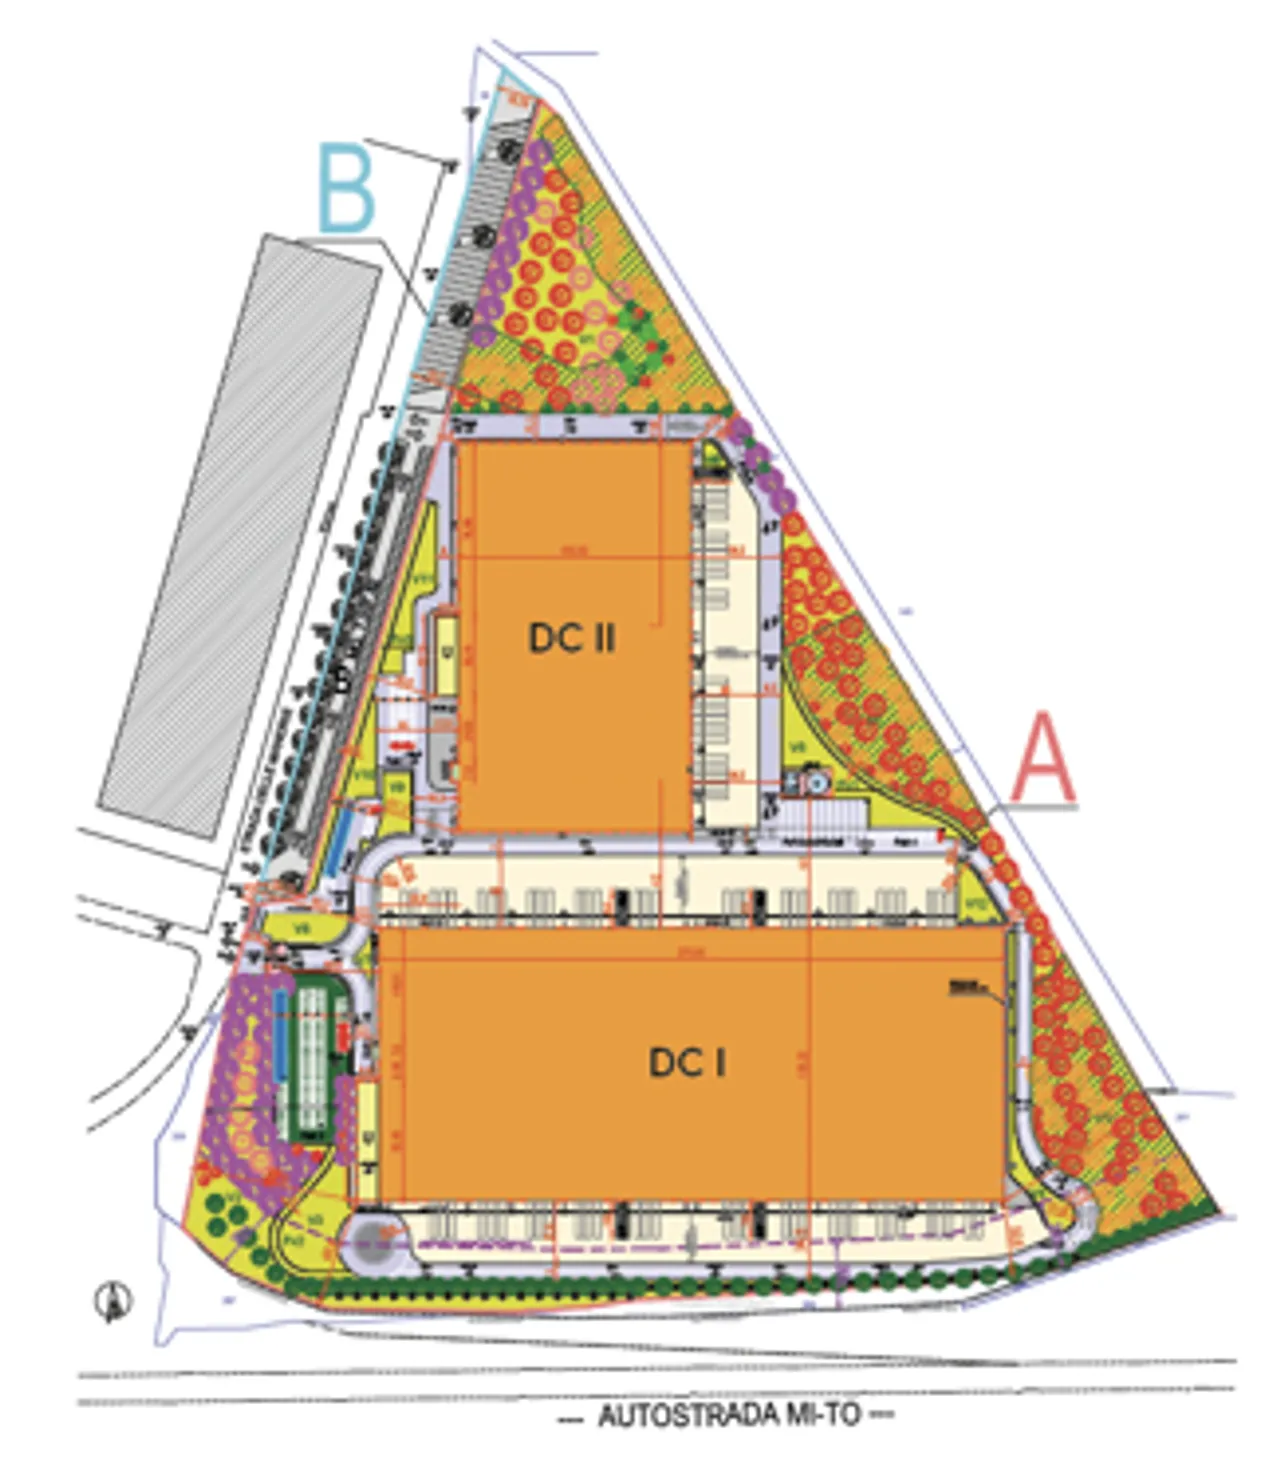 logistics - North Vercelli - Logistics - Dils - Floor Plan - 1